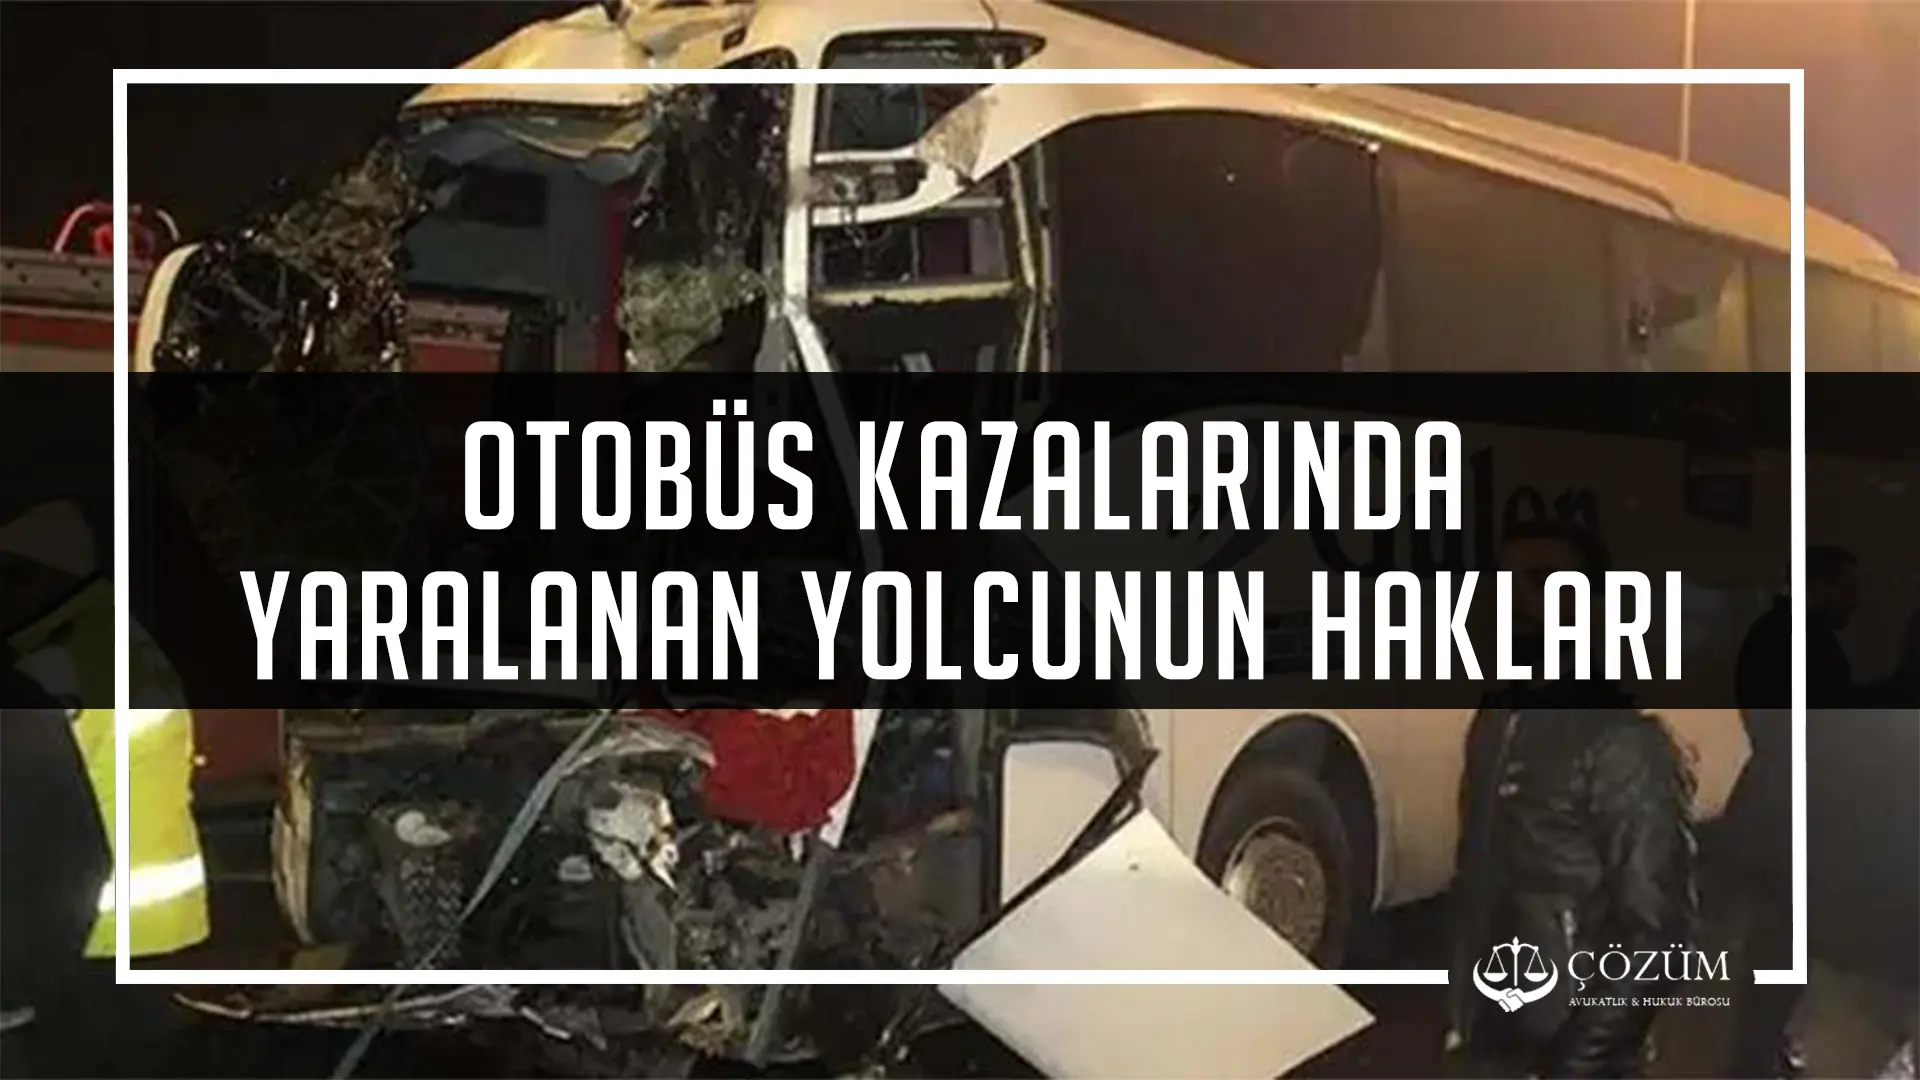 Otobus Kazalarinda Yaralanan Yolcularin Haklari